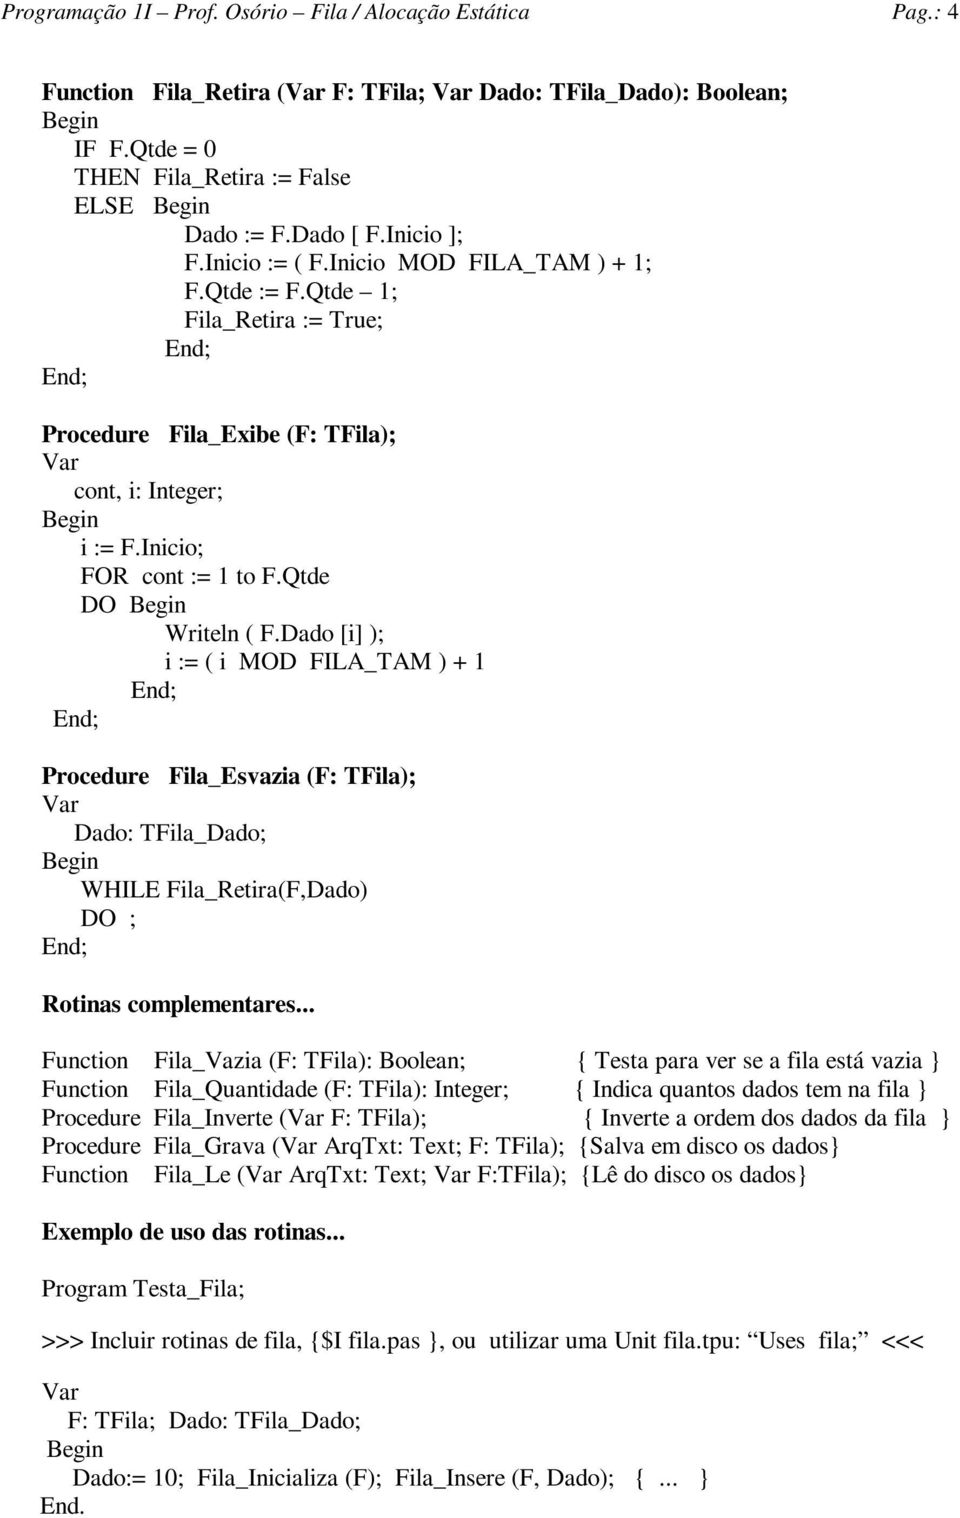 ado [i] ); i := ( i MO FILA_TAM ) + 1 Procedure Fila_Esvazia (F: TFila); ado: TFila_ado; WHILE Fila_Retira(F,ado) O ; Rotinas complementares.